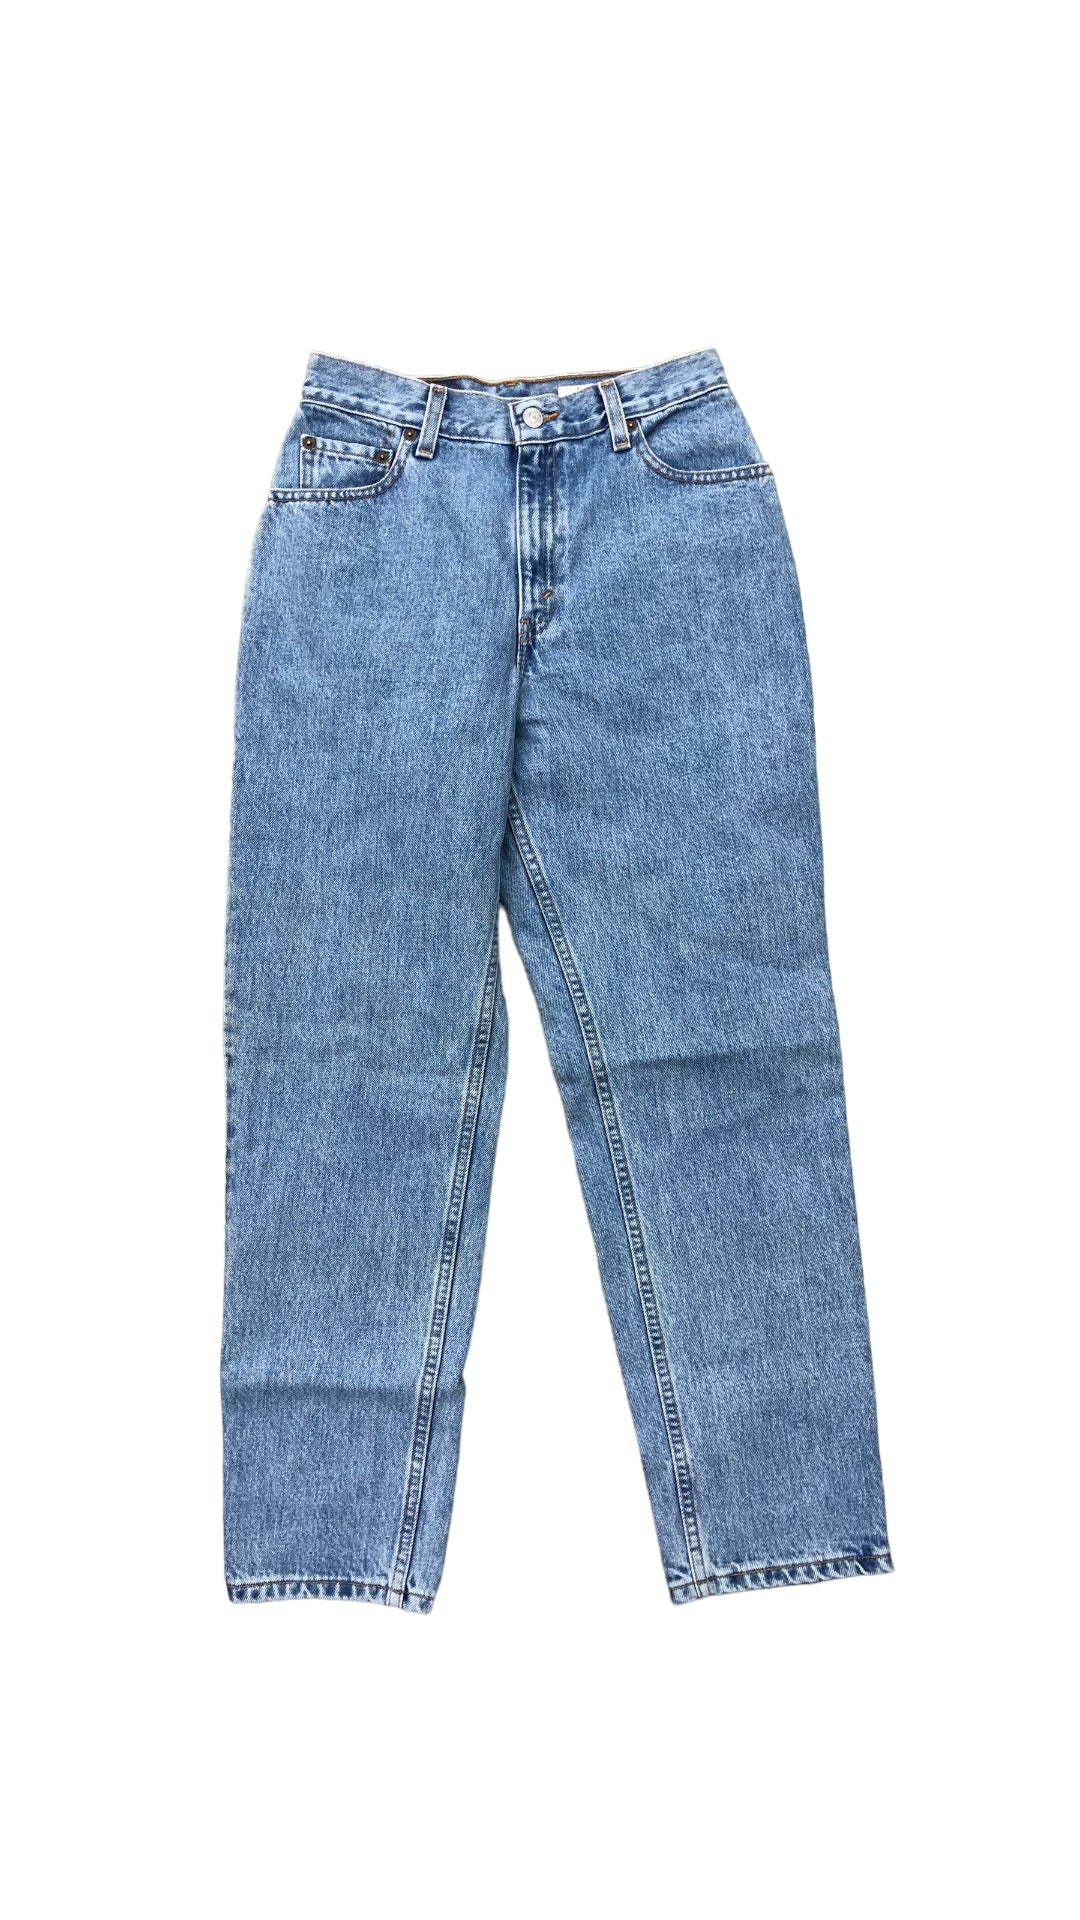 VTG Nos Levi's 550 Blue Jeans Sz 26x28